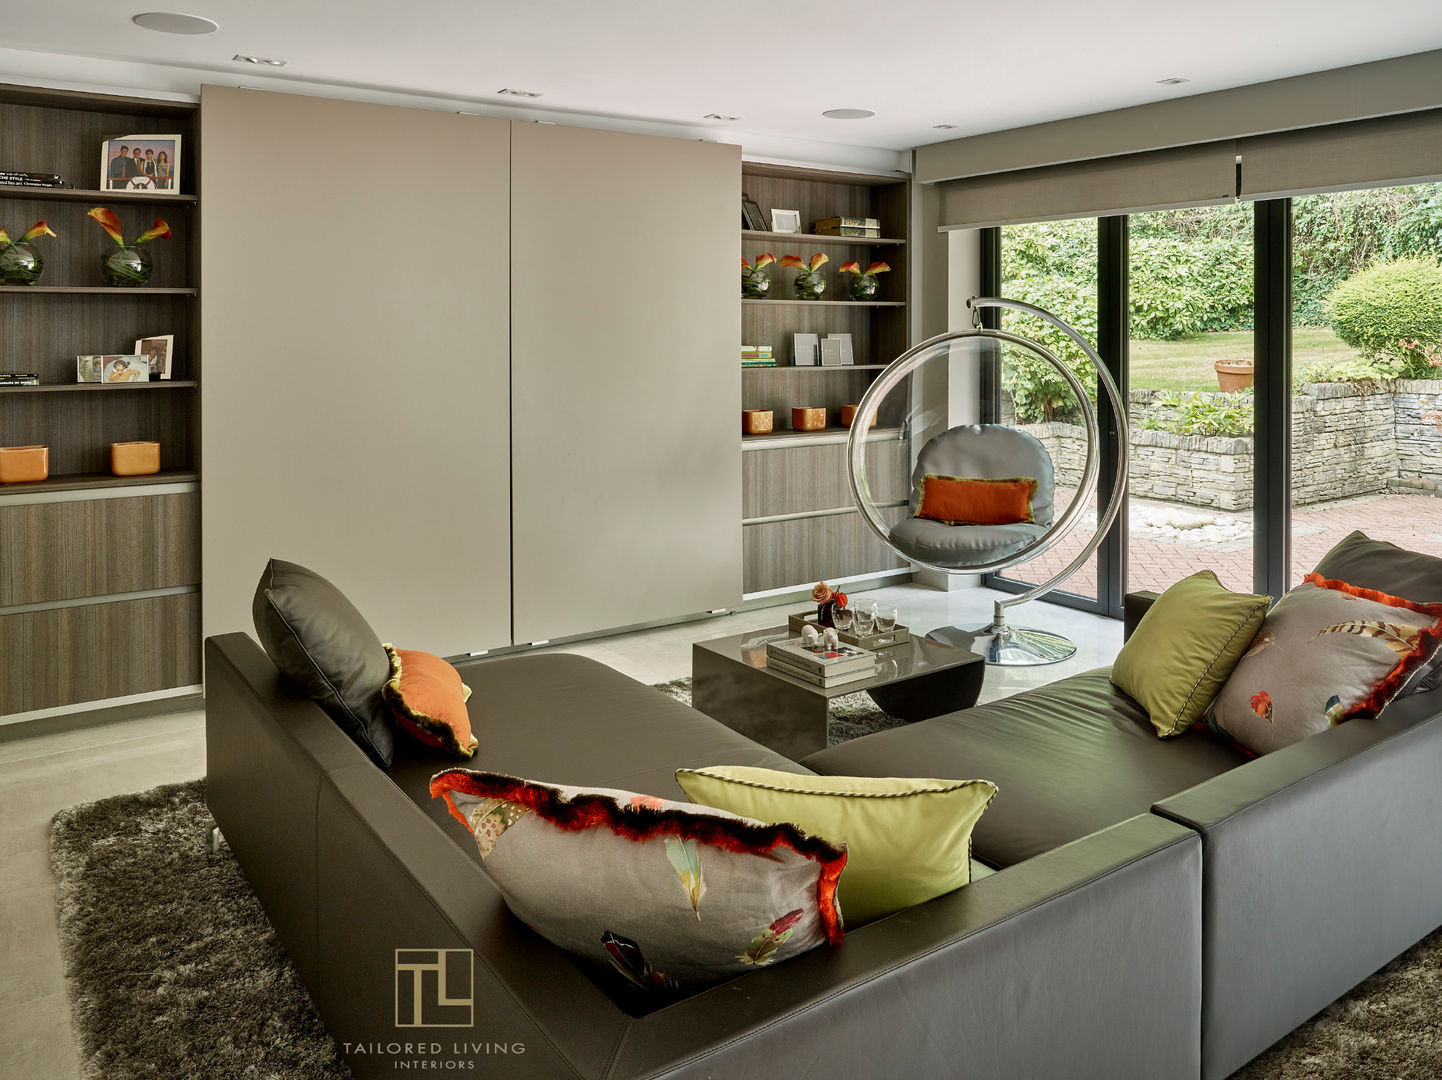 Versatile design Tailored Living Interiors مطبخ Kitchen designer,interior designer,contemporary kitchen,bespoke design